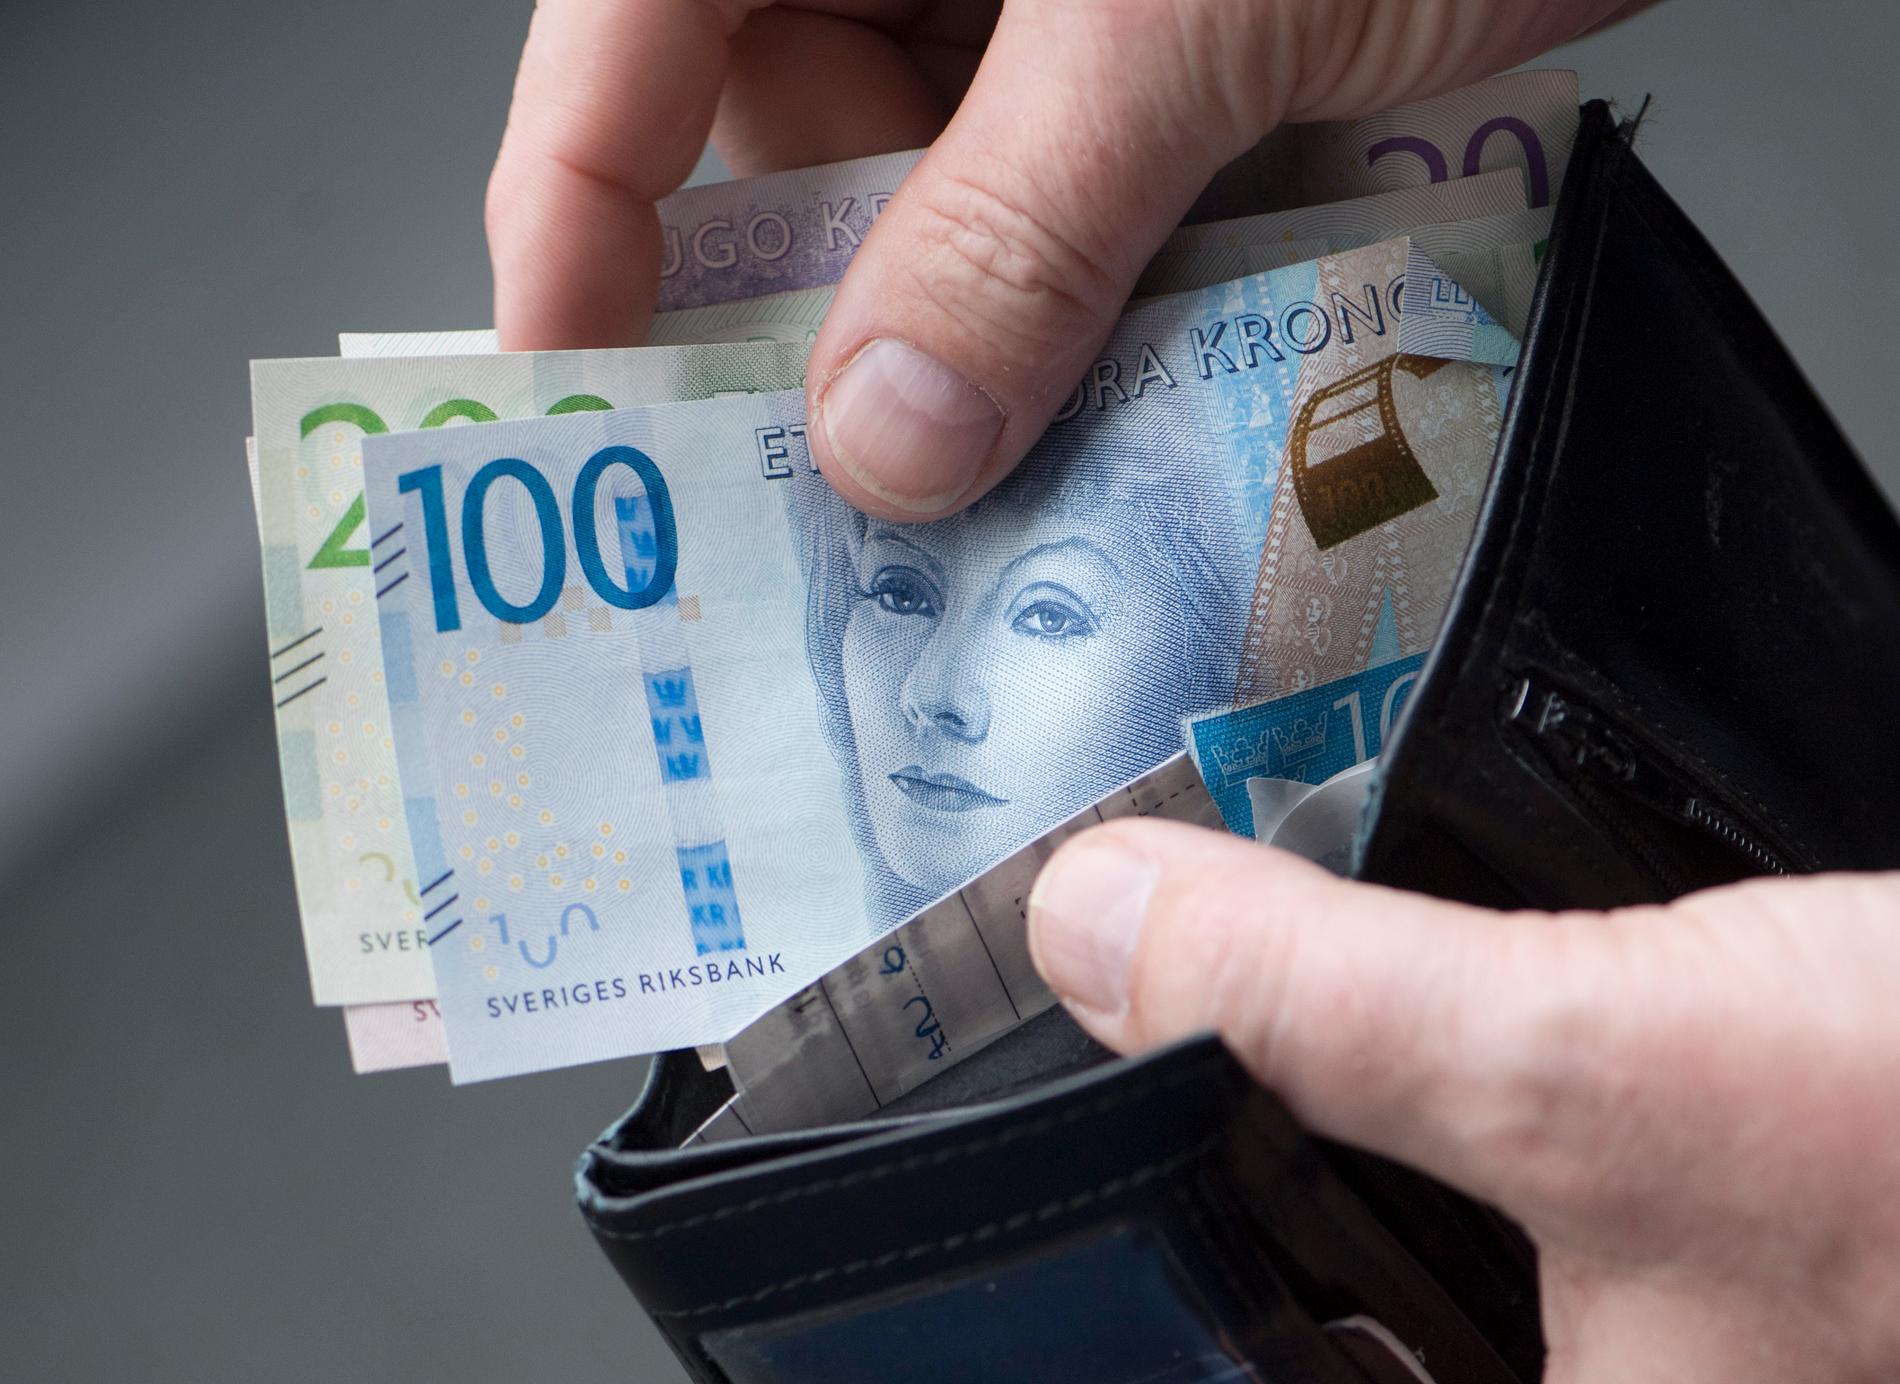 Göteborgs stad har betalat ut miljontals kronor i felaktiga löner. Arkivbild.